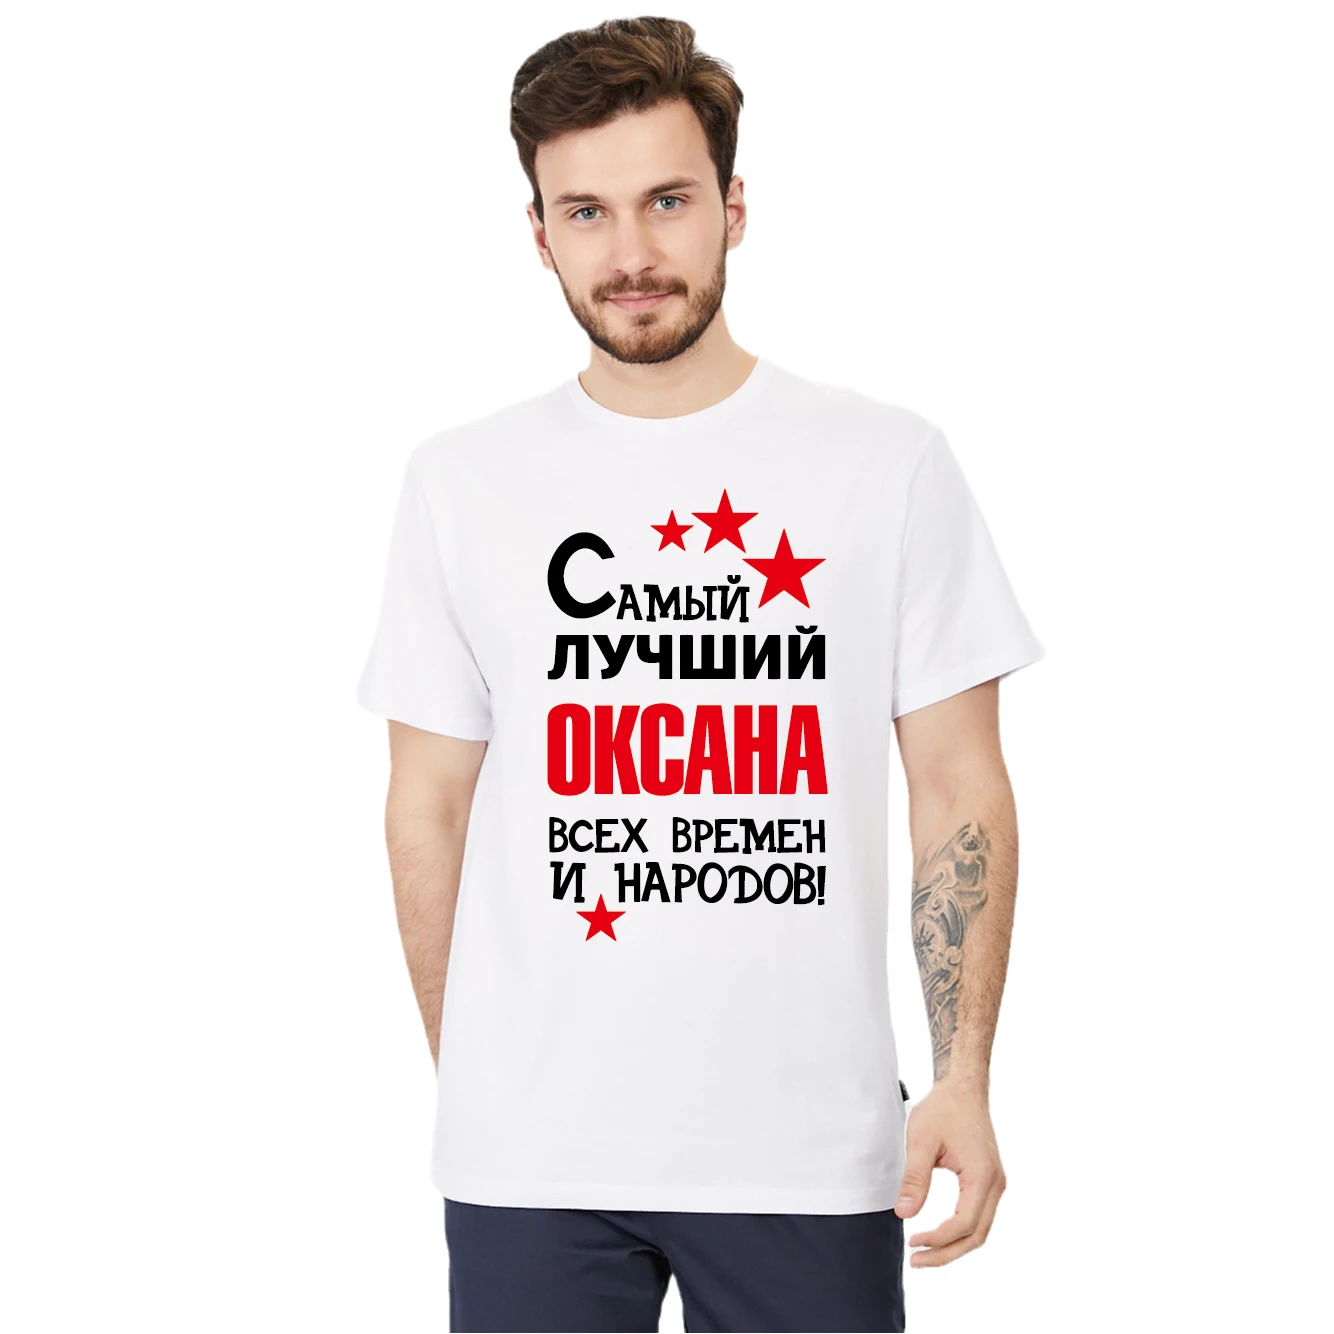 

Мужская хлопковая футболка с принтом, Лучший товар Модная рубашка в русском стиле, футболки, топы, индивидуальное имя